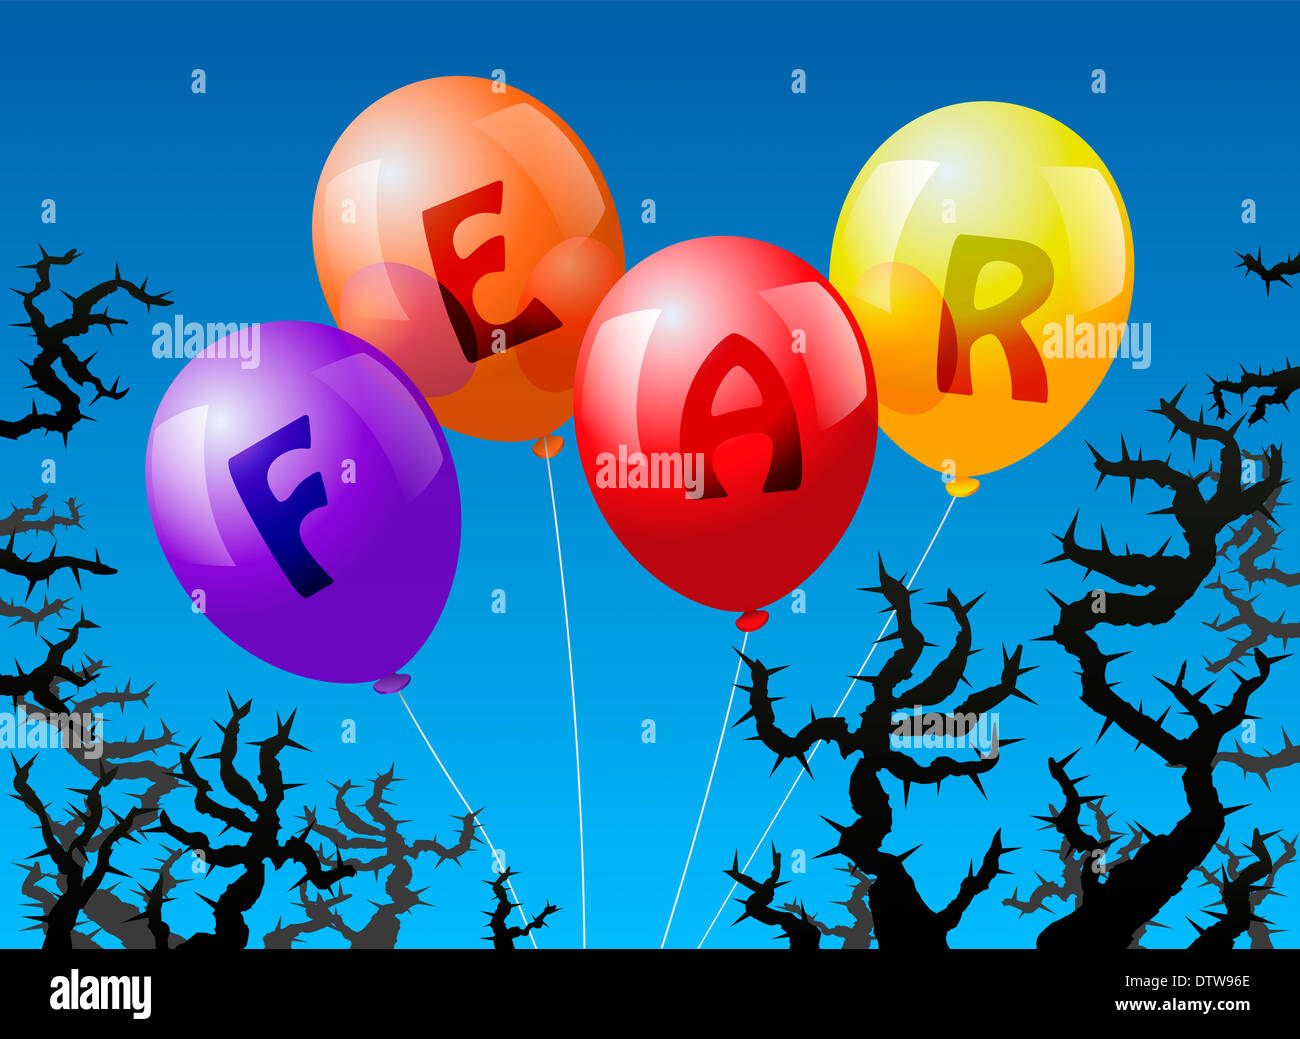 Vier Ballons, die mit dem Wort Angst gekennzeichnet sind, droht der Dornen. Stockfoto